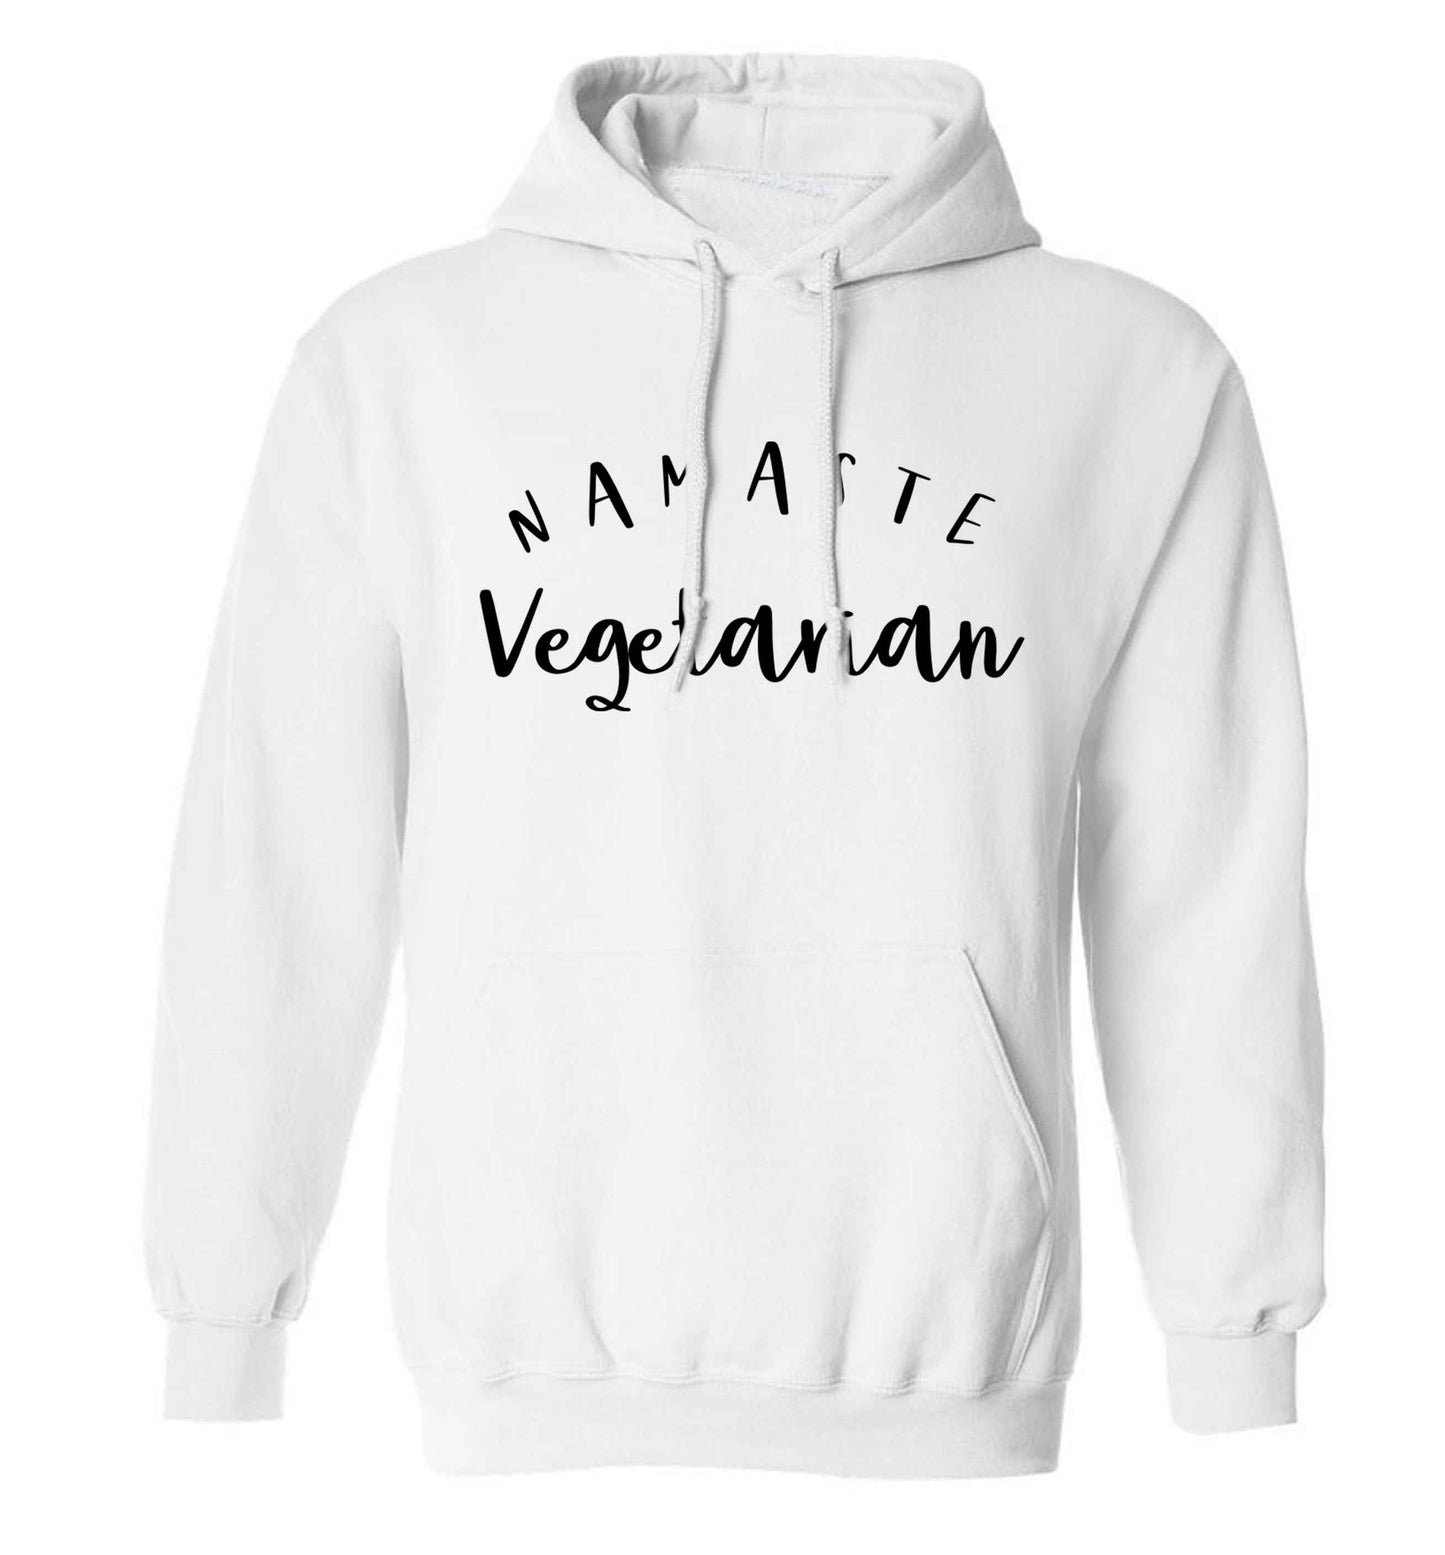 Namaste vegetarian adults unisex white hoodie 2XL